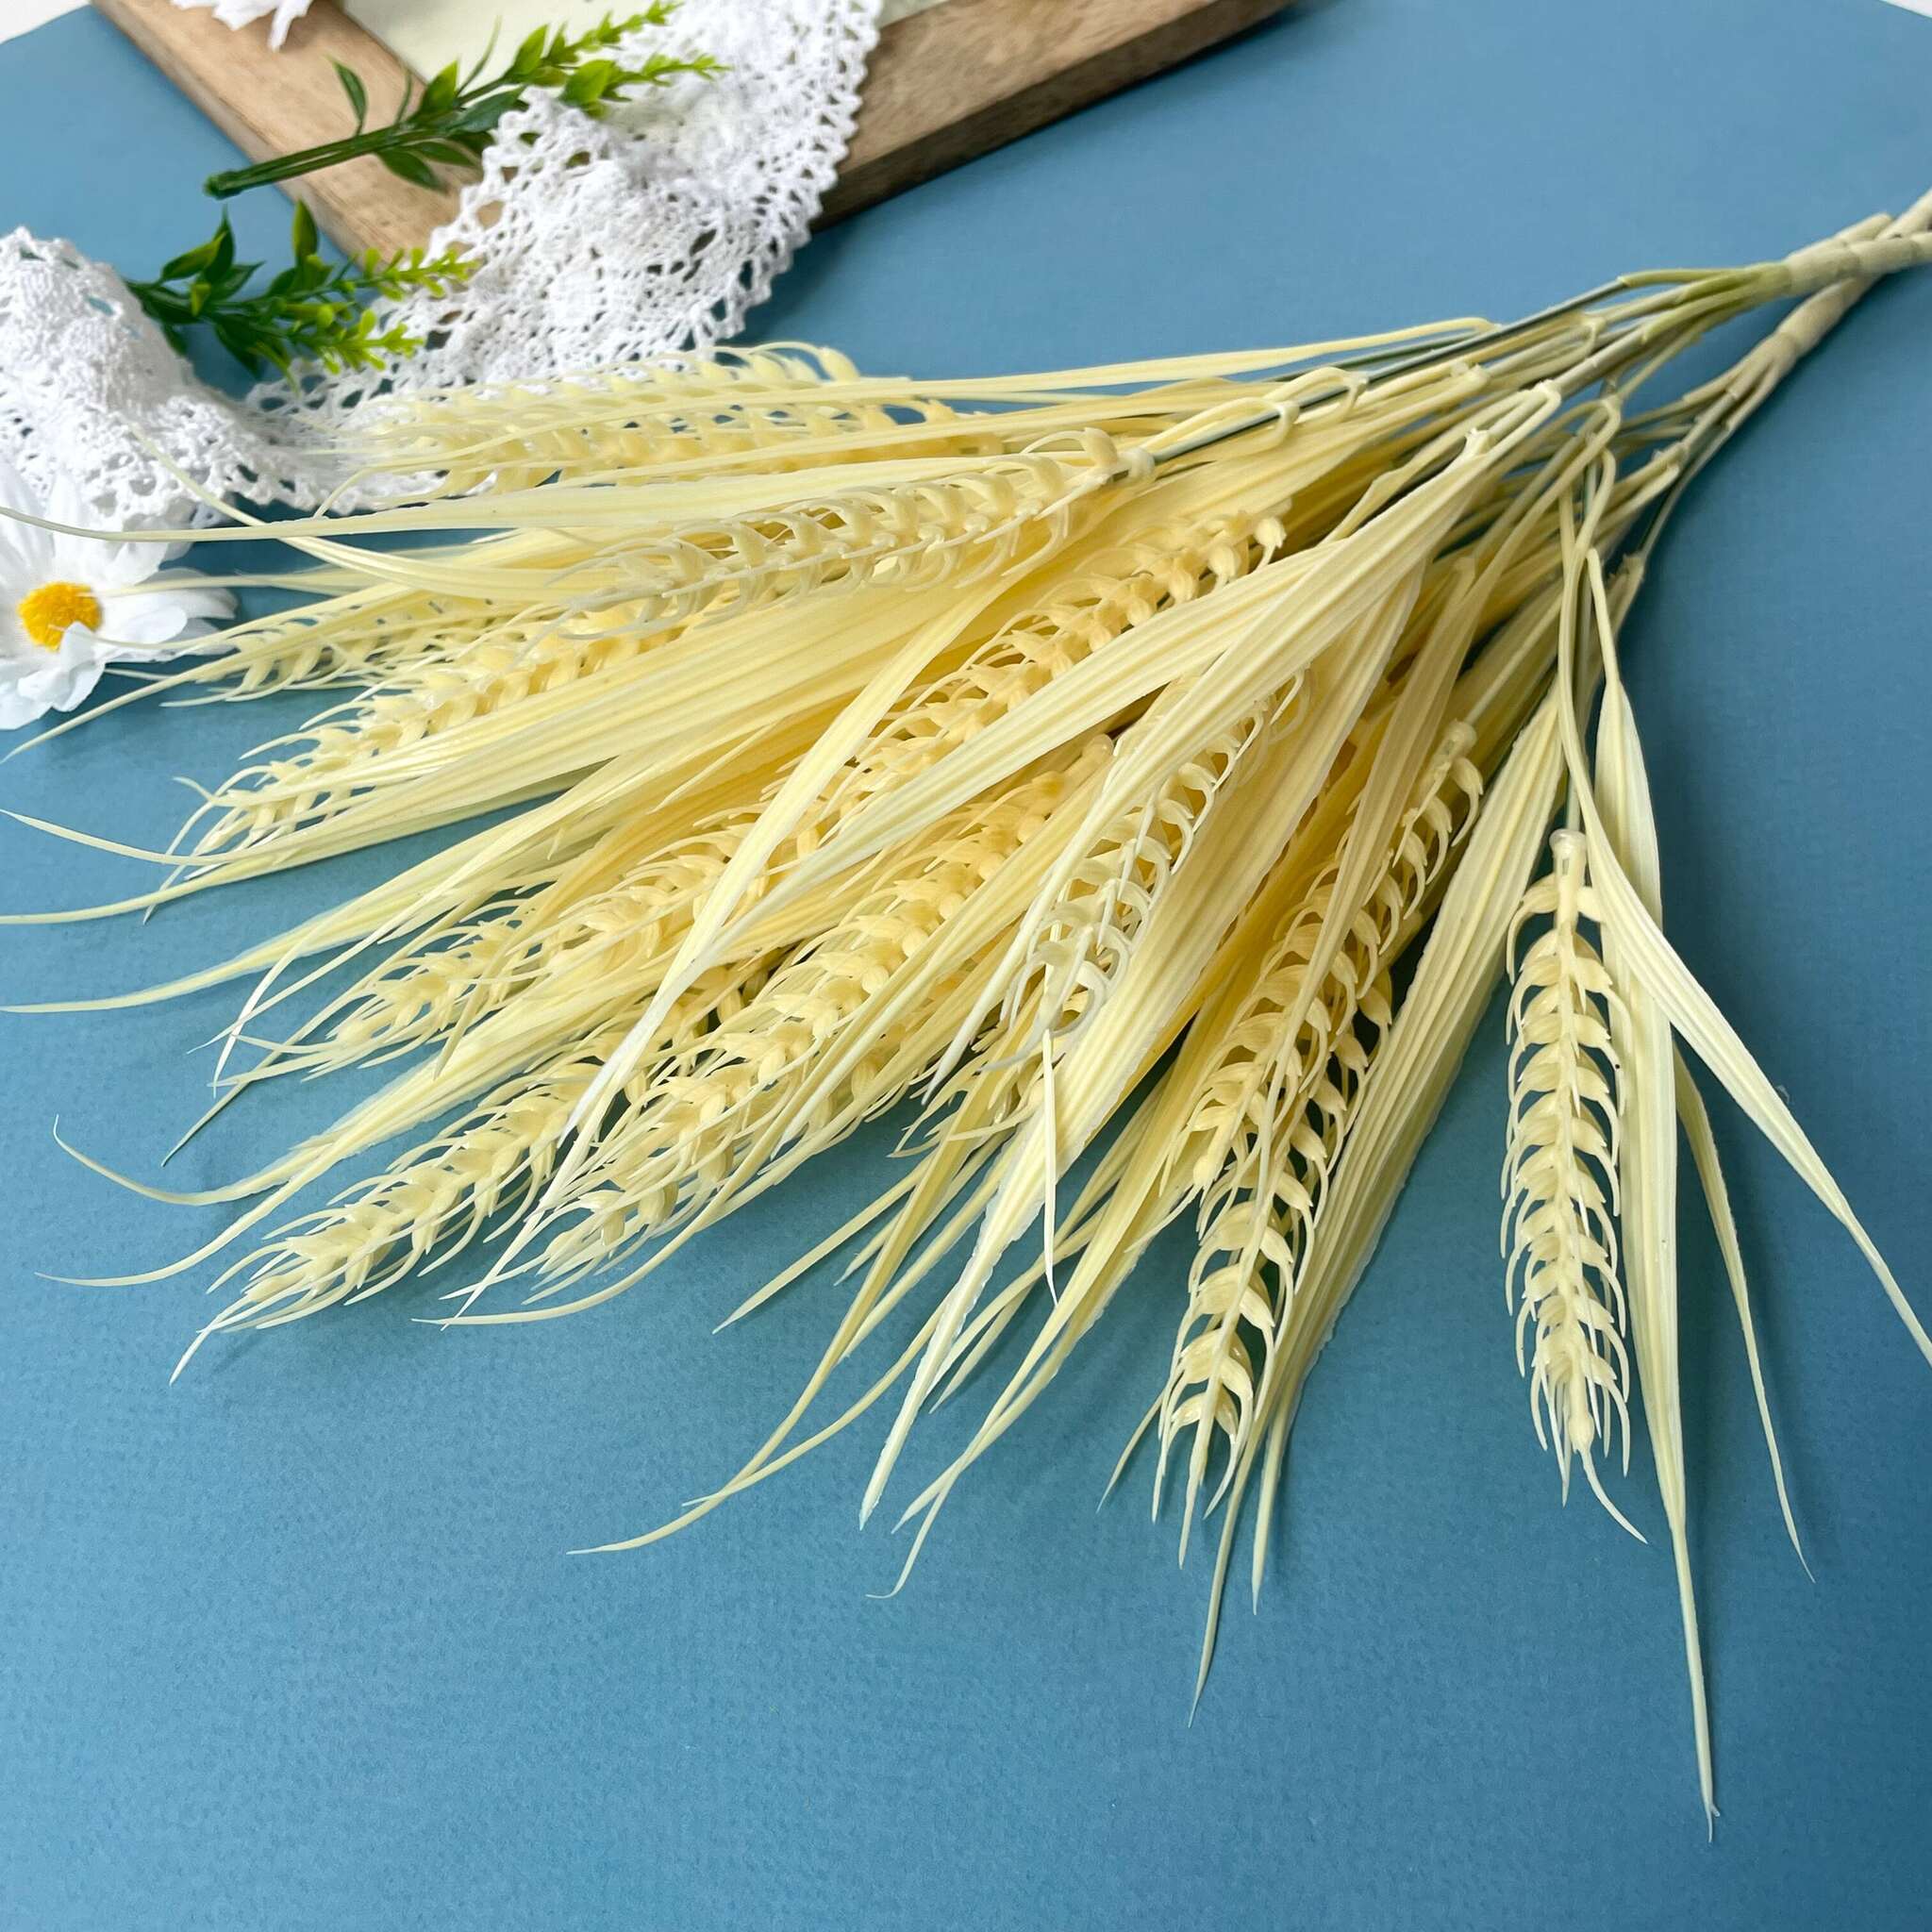 Пшеница в снопе 61 см декоративная в продаже в любом из магазинов ALIR В Кишиневе